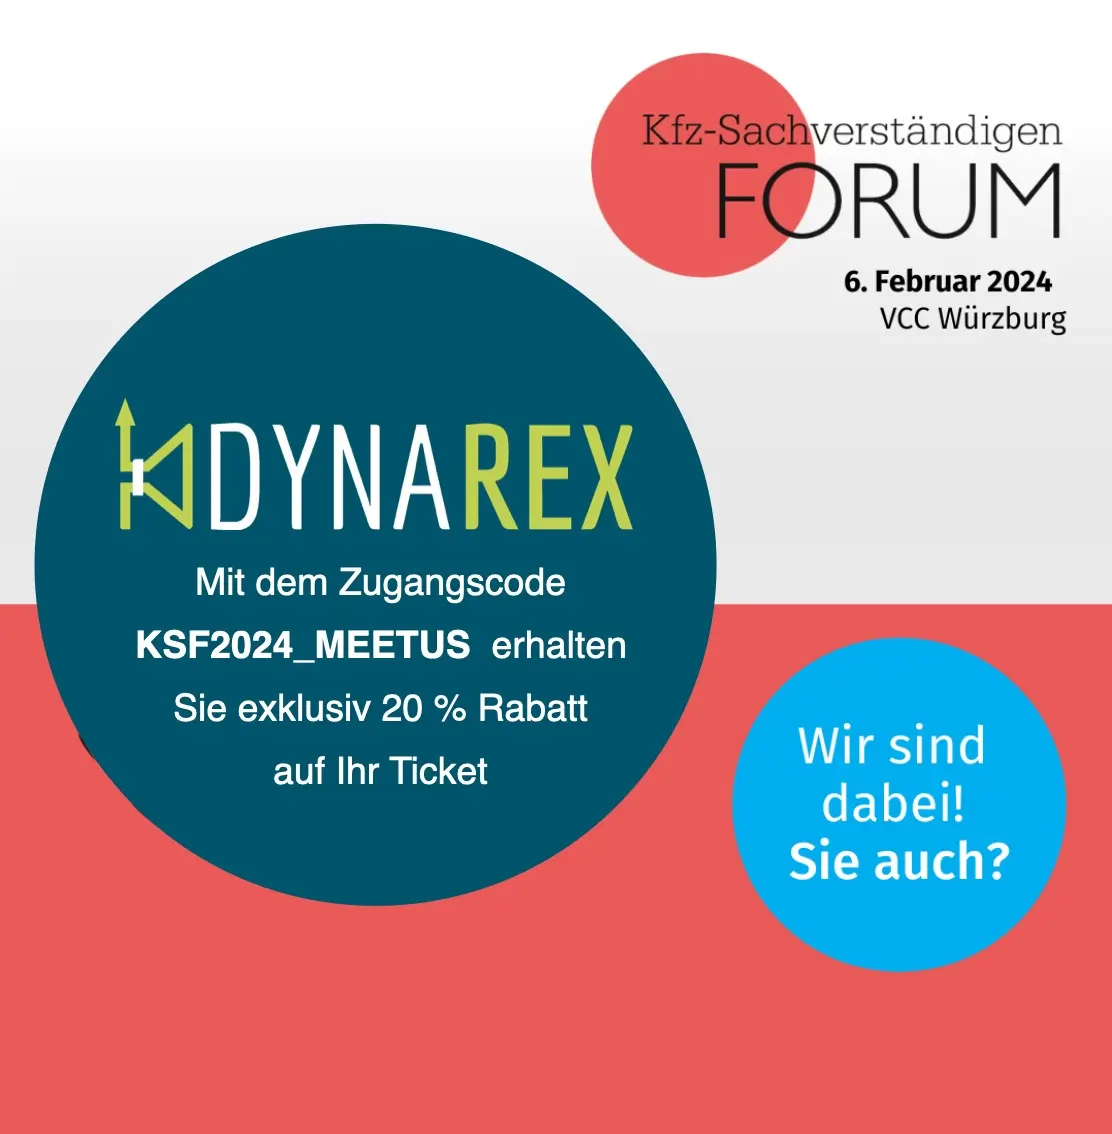 KFZ Sachverständigen Forum in Würzburg – 06.02.24 von 8 bis 17 Uhr